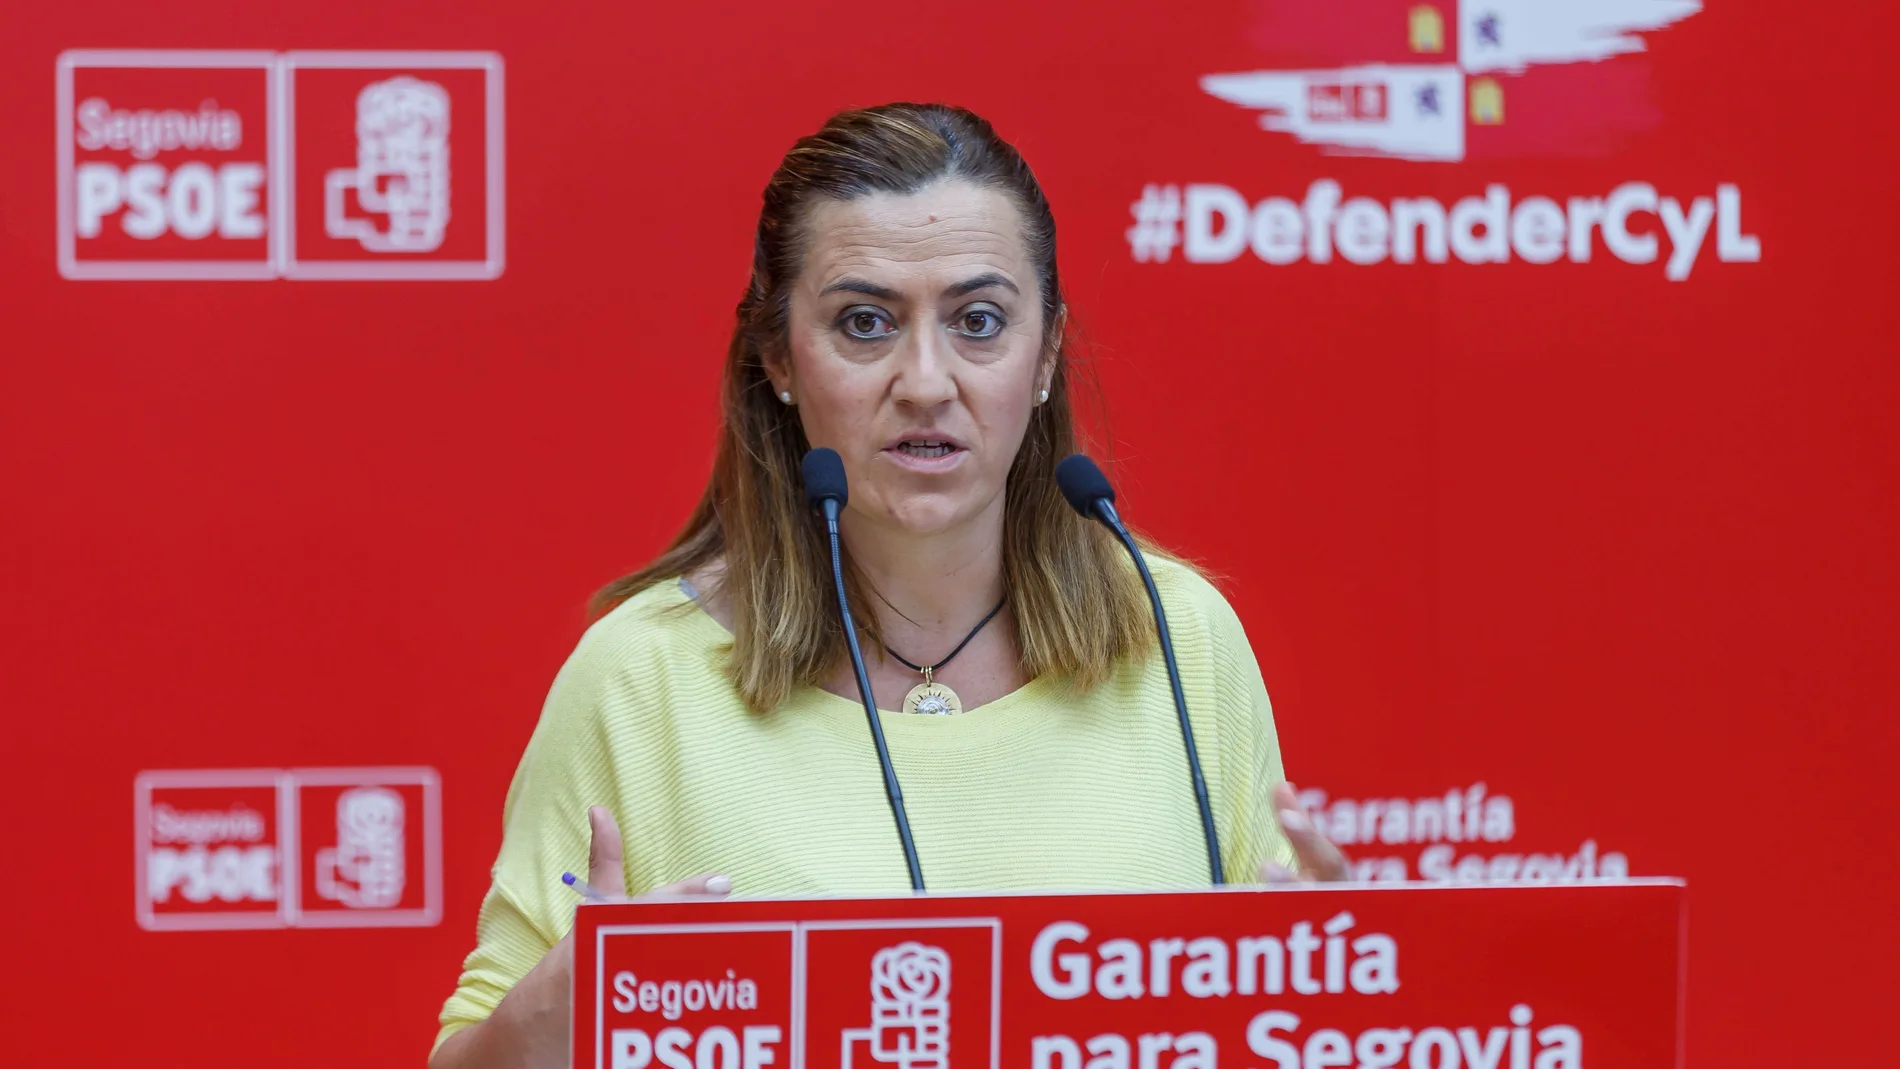 La vicesecretaria regional del PSOE, Virginia barcones, atiende a la prensa tras reunirse con los alcaldes y concejales del partido en la provincia de Segovia